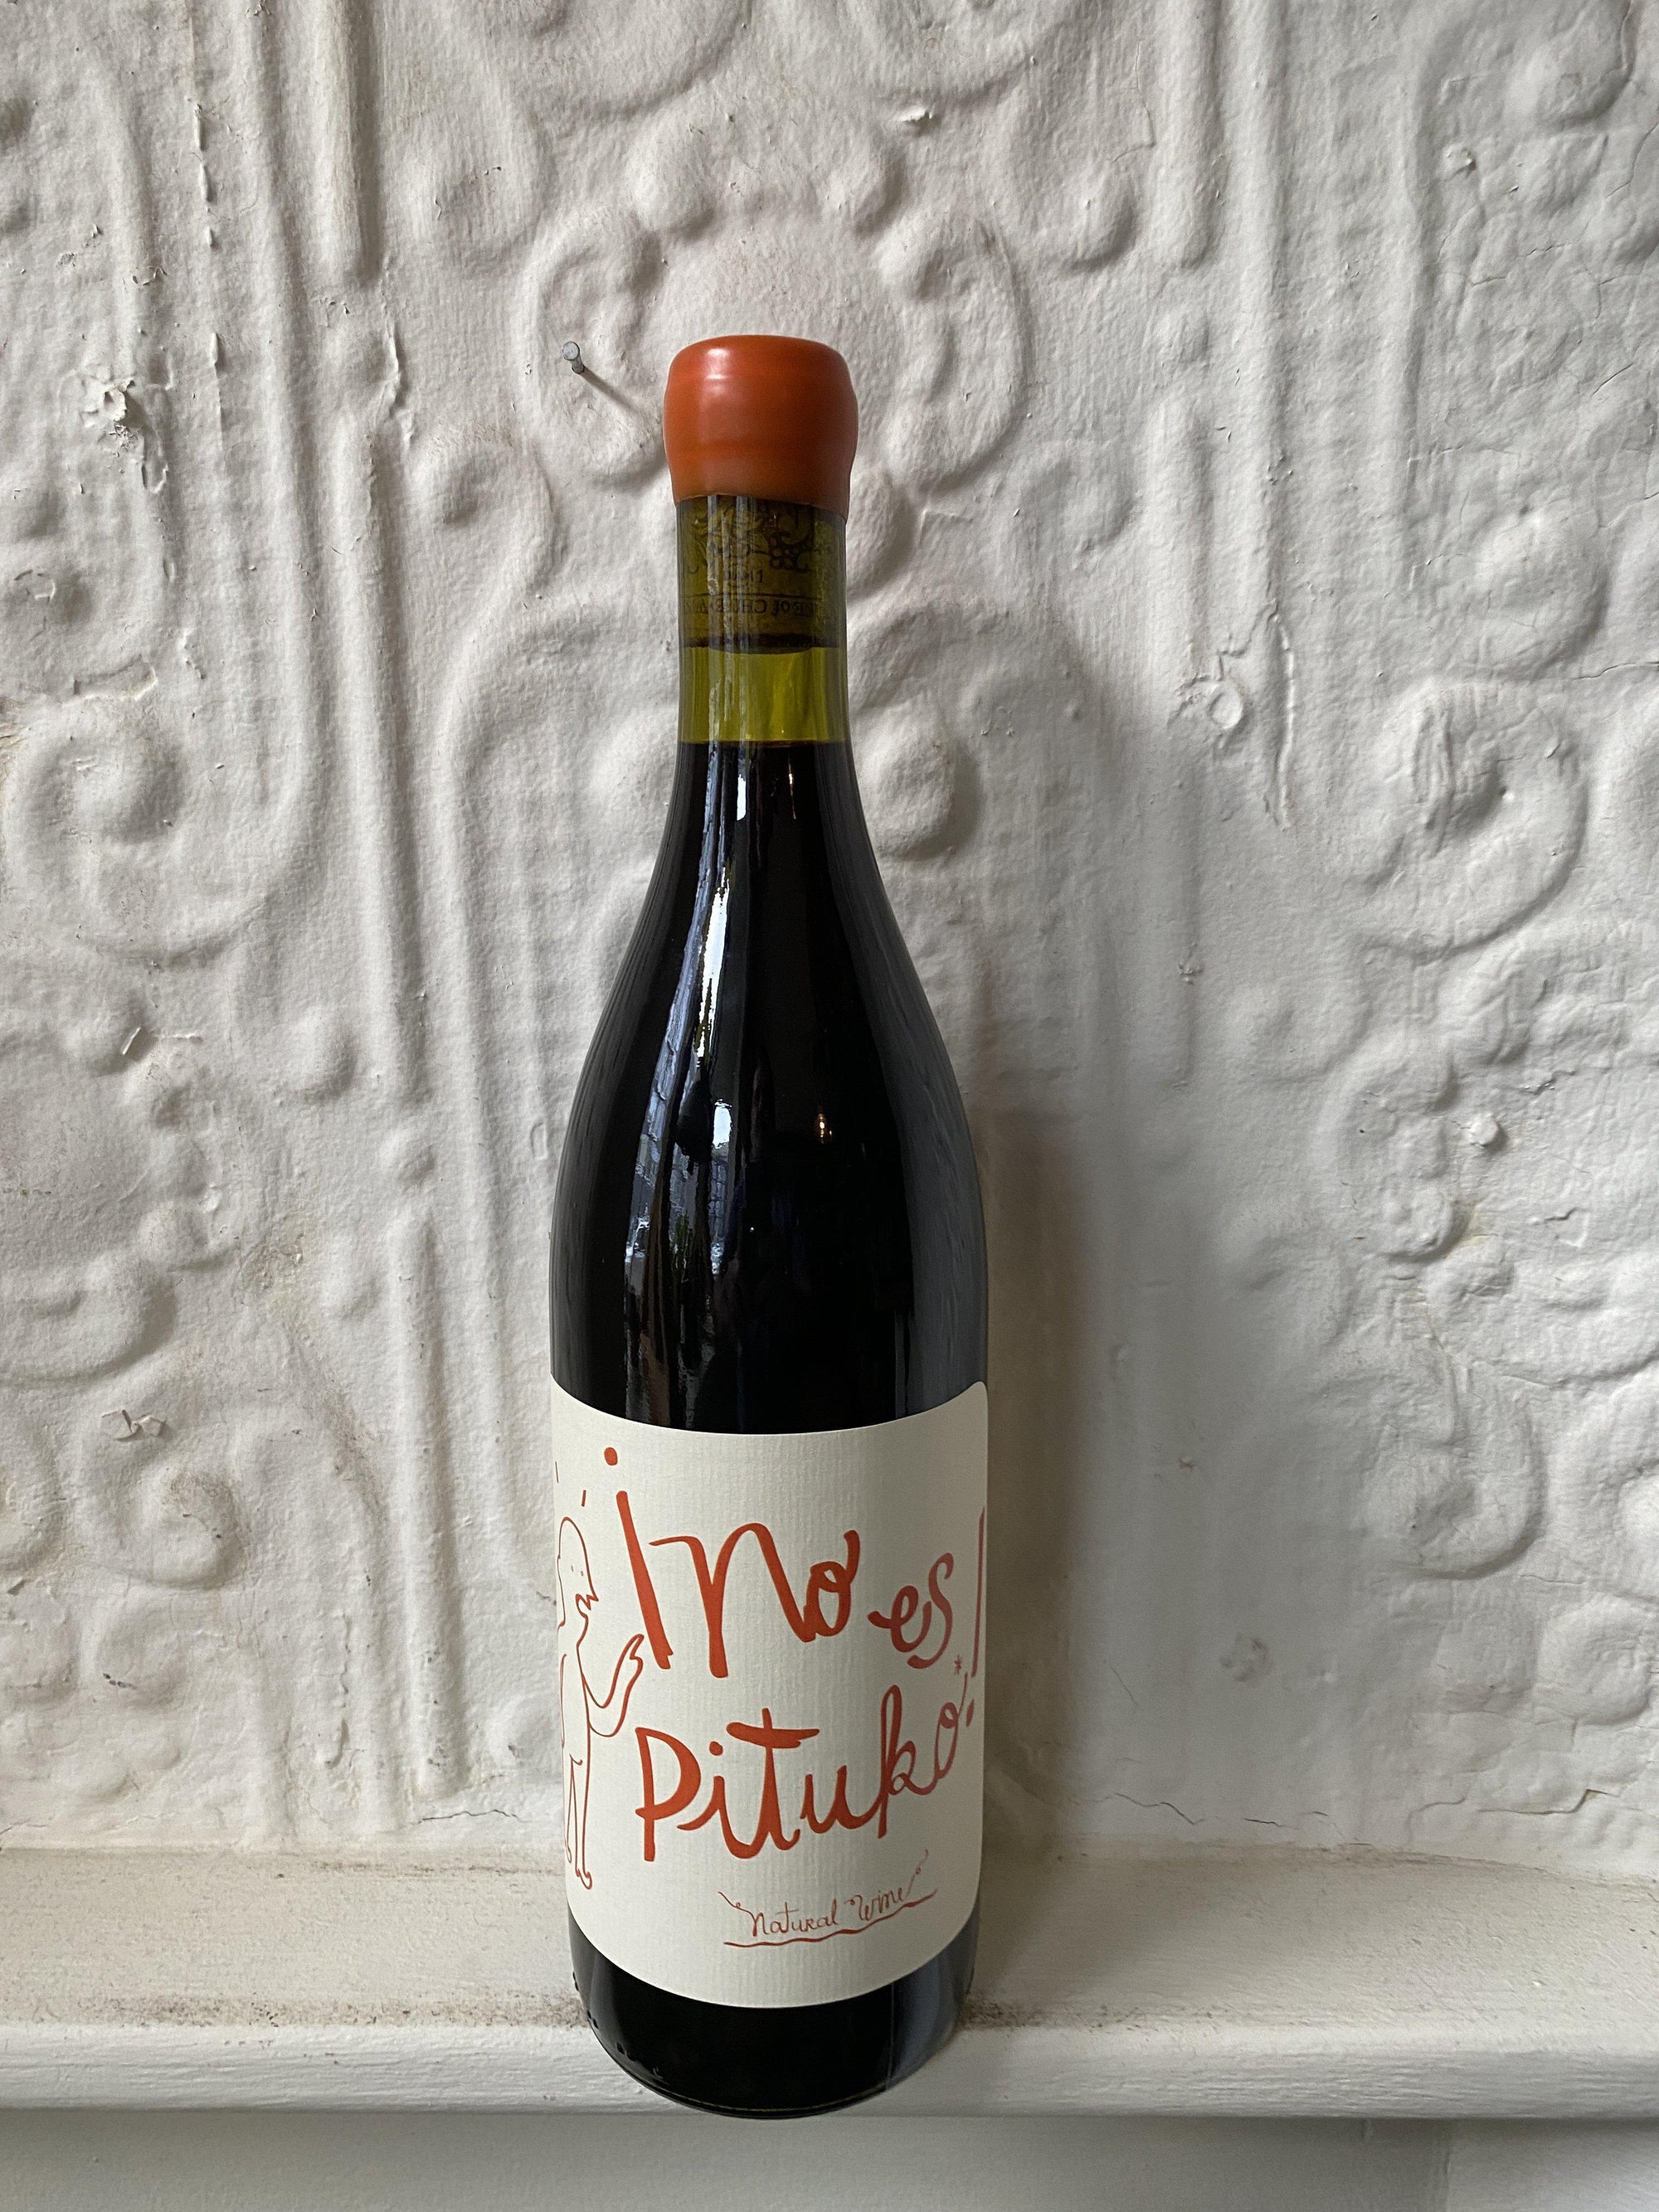 Cabernet Sauvignon "No es Pituko", Vina Echeverria 2020 (Curico Valley, Chile)-Wine-Bibber & Bell